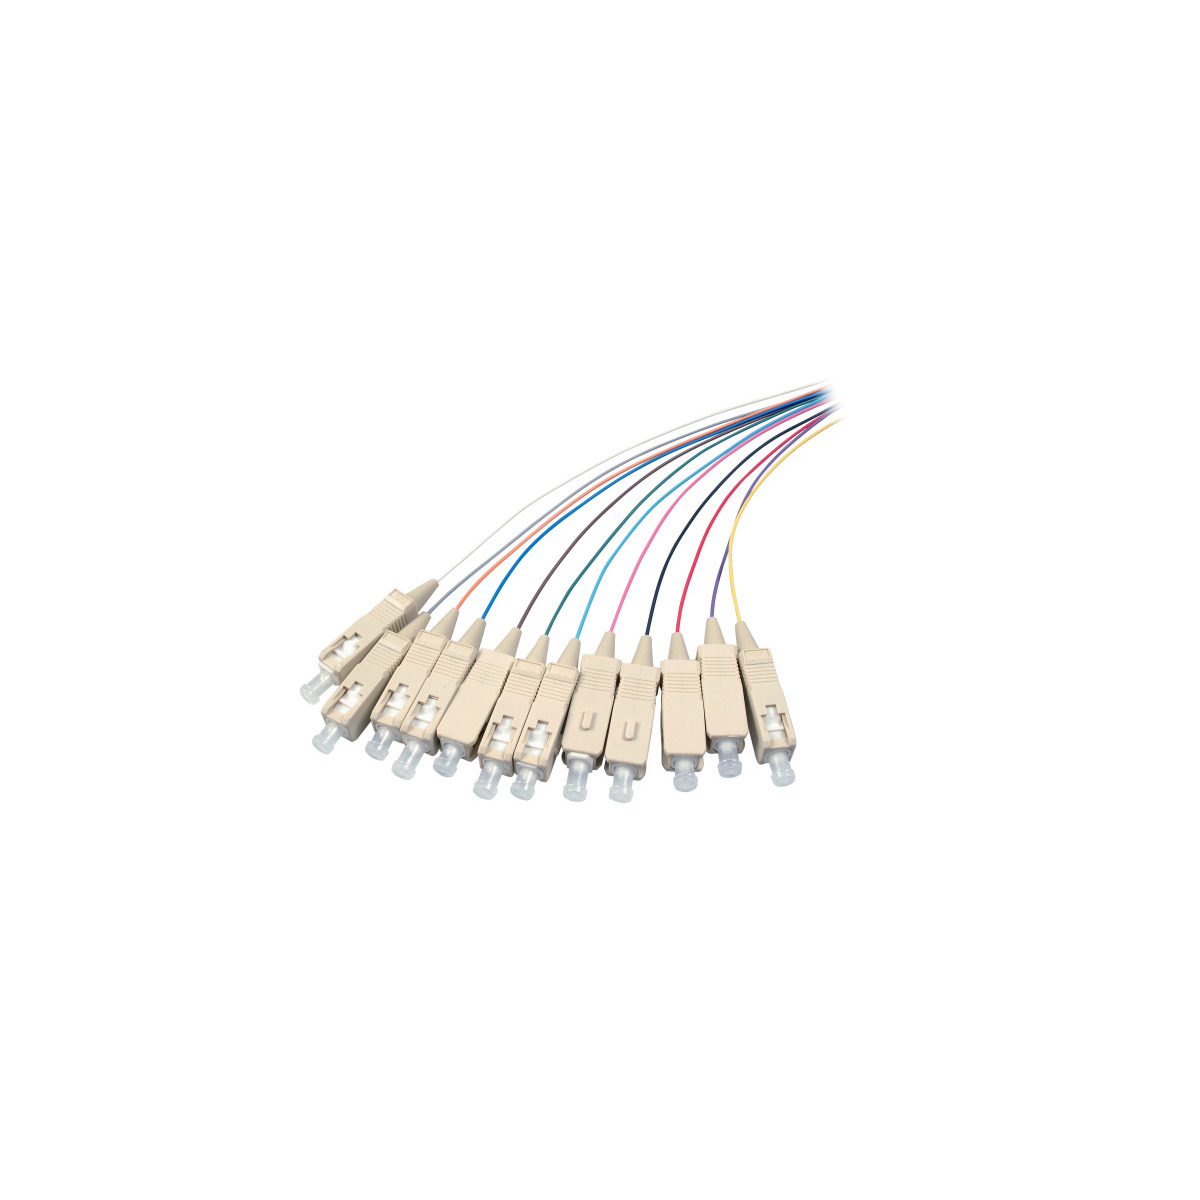 COMMUNIK Kabel Pigtails Glasfaserkabel, m / 2 Faserpigtails, SC